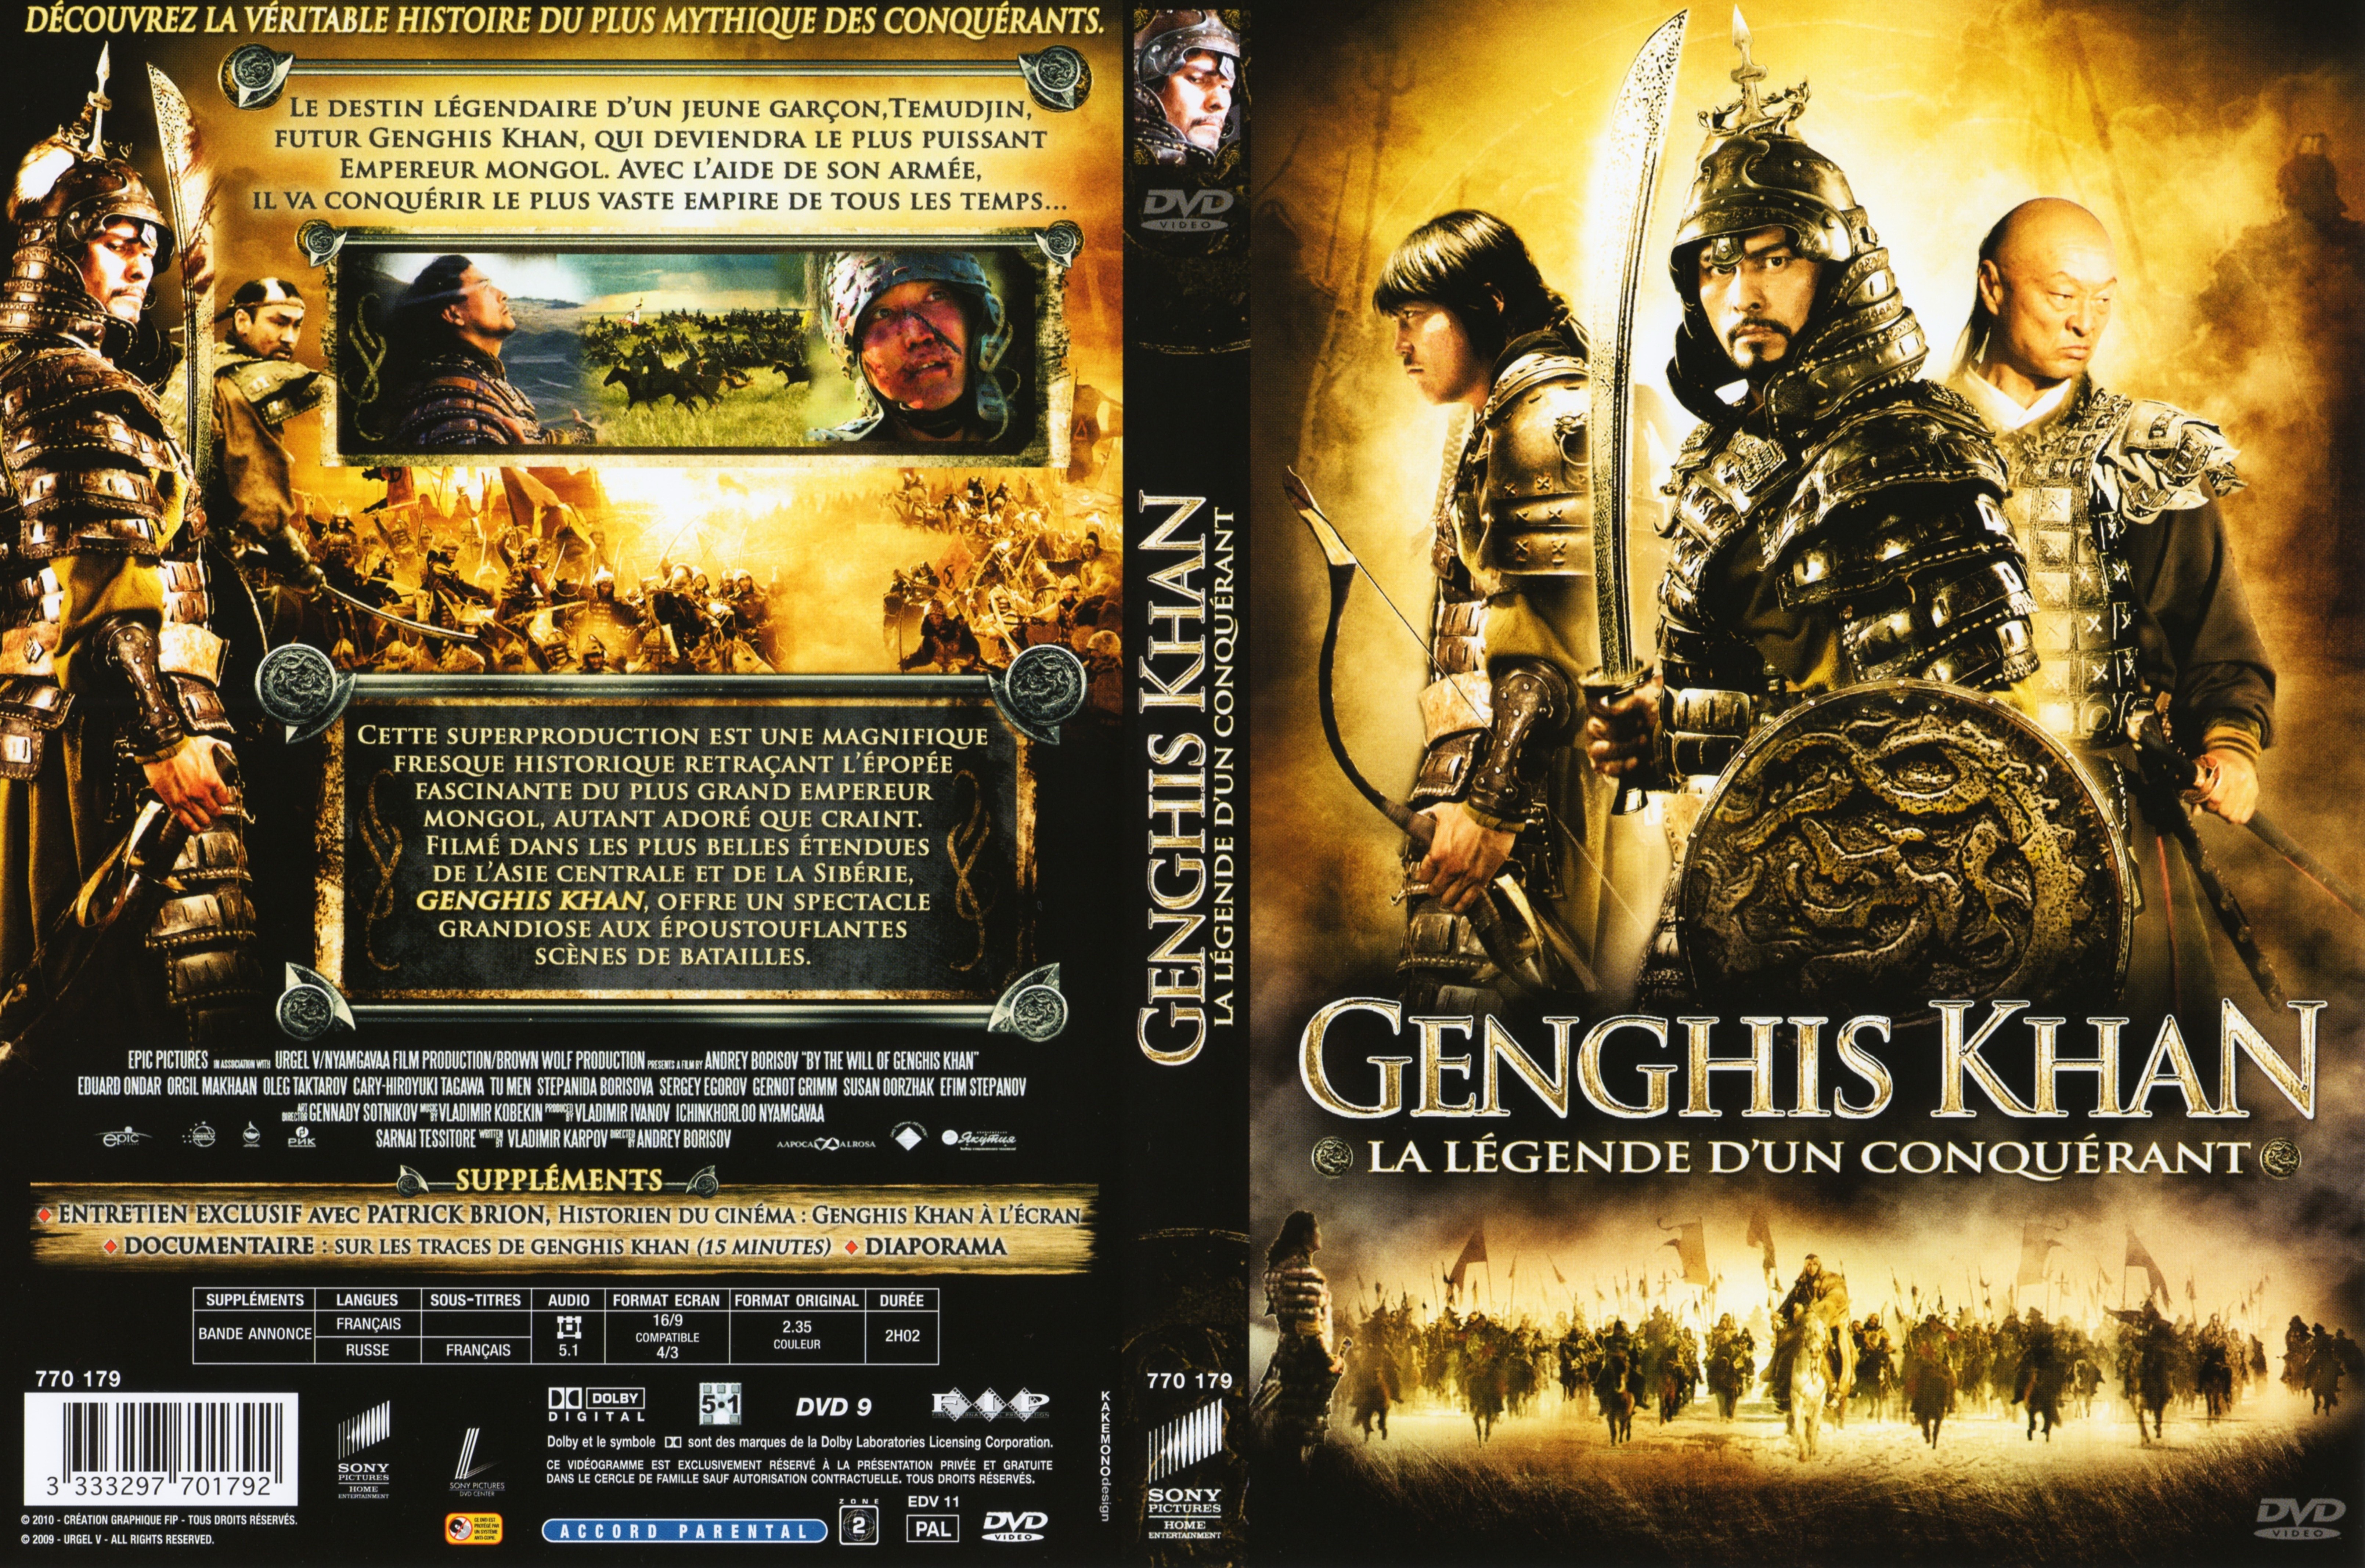 Jaquette DVD Genghis Khan la lgende d